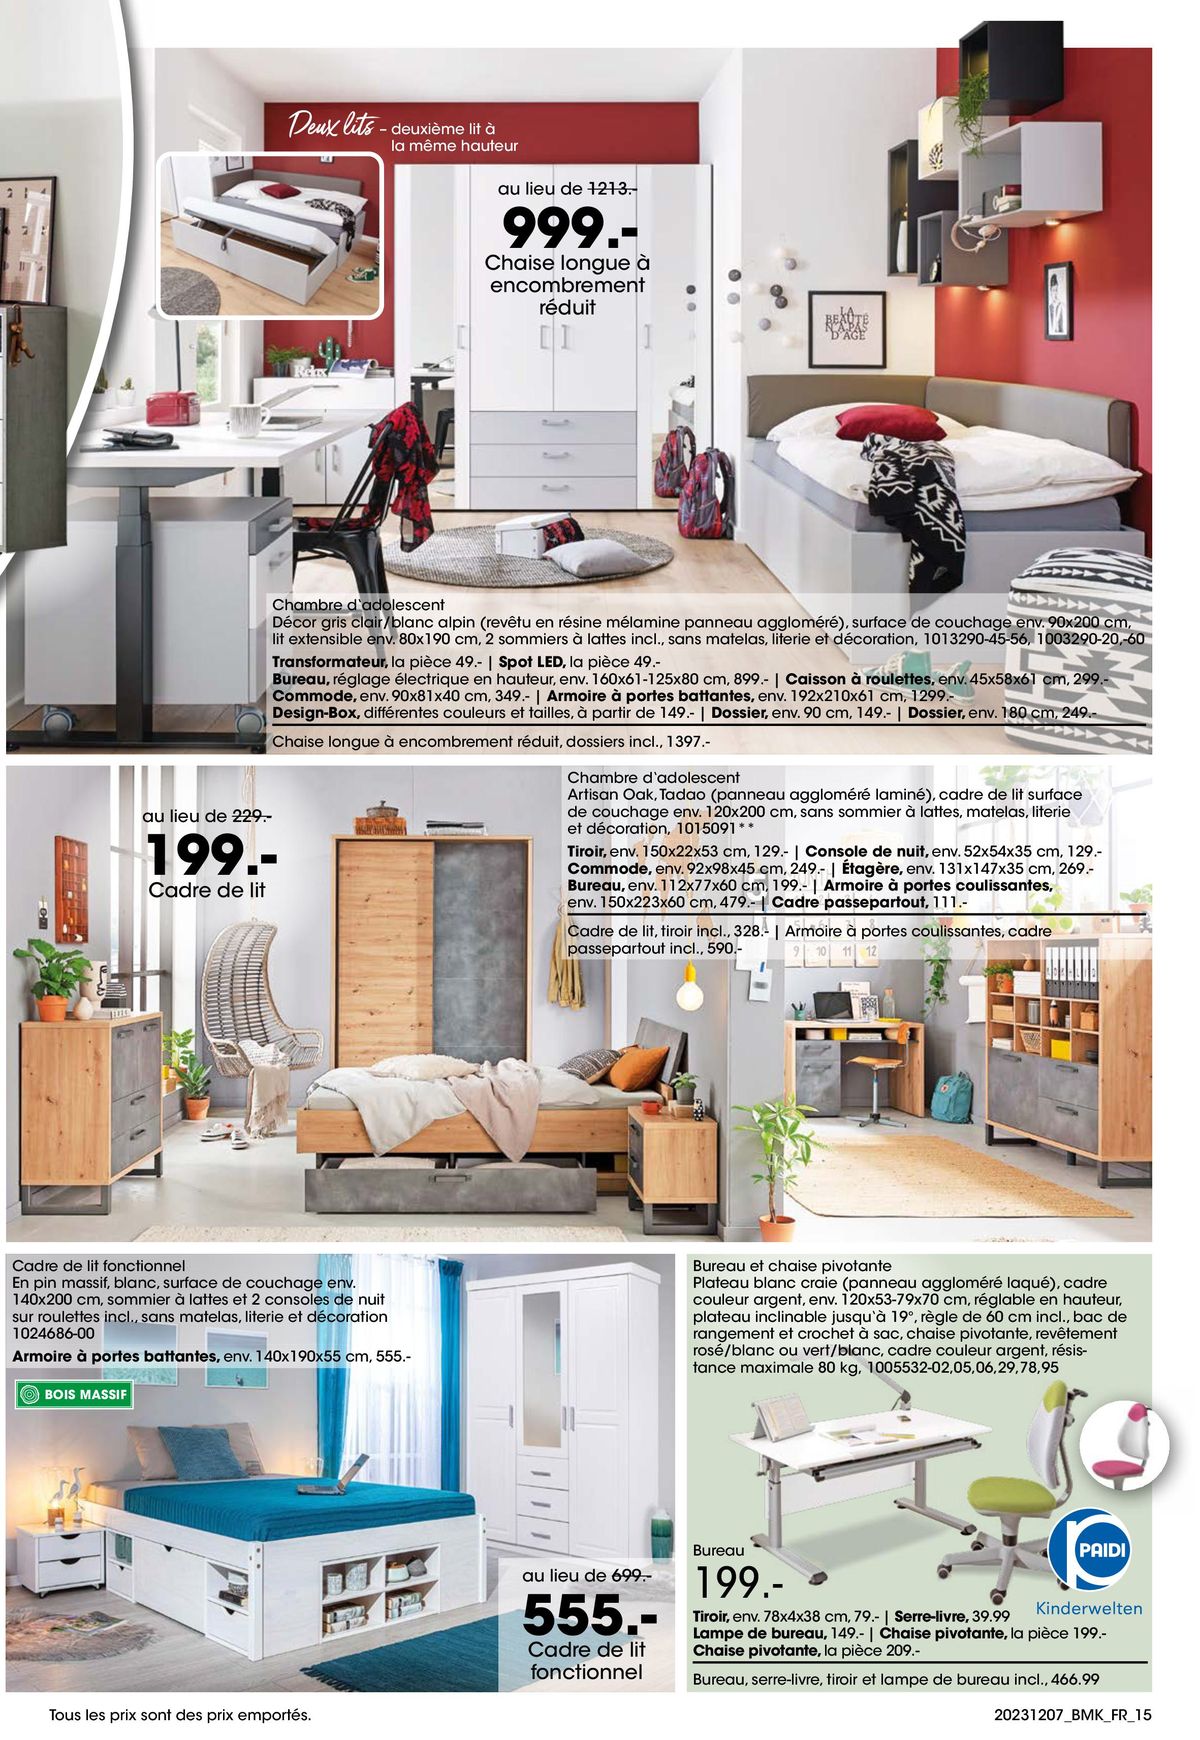 Catalogue Votre nouveau chez-vous avec GARANTIE-MEILLEUR PRIX, page 00015